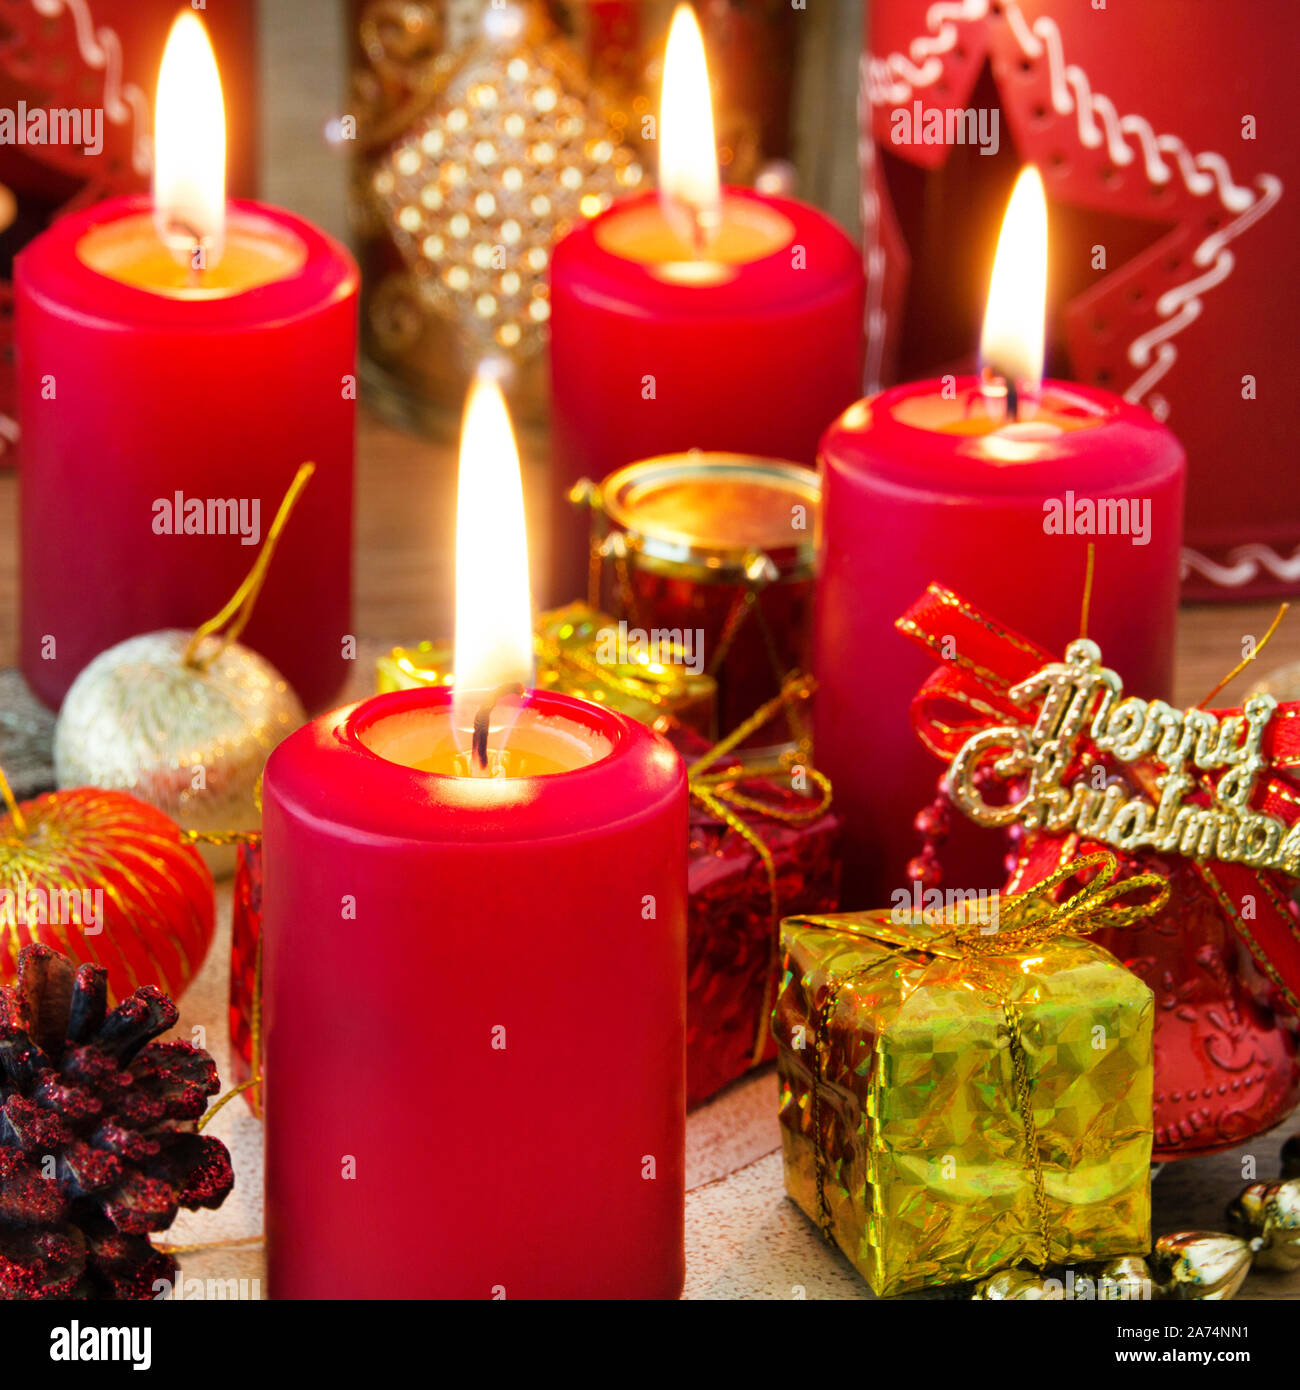 Weihnachten rote Kerzen mit Kerzenlicht und dekoration Foto Stock